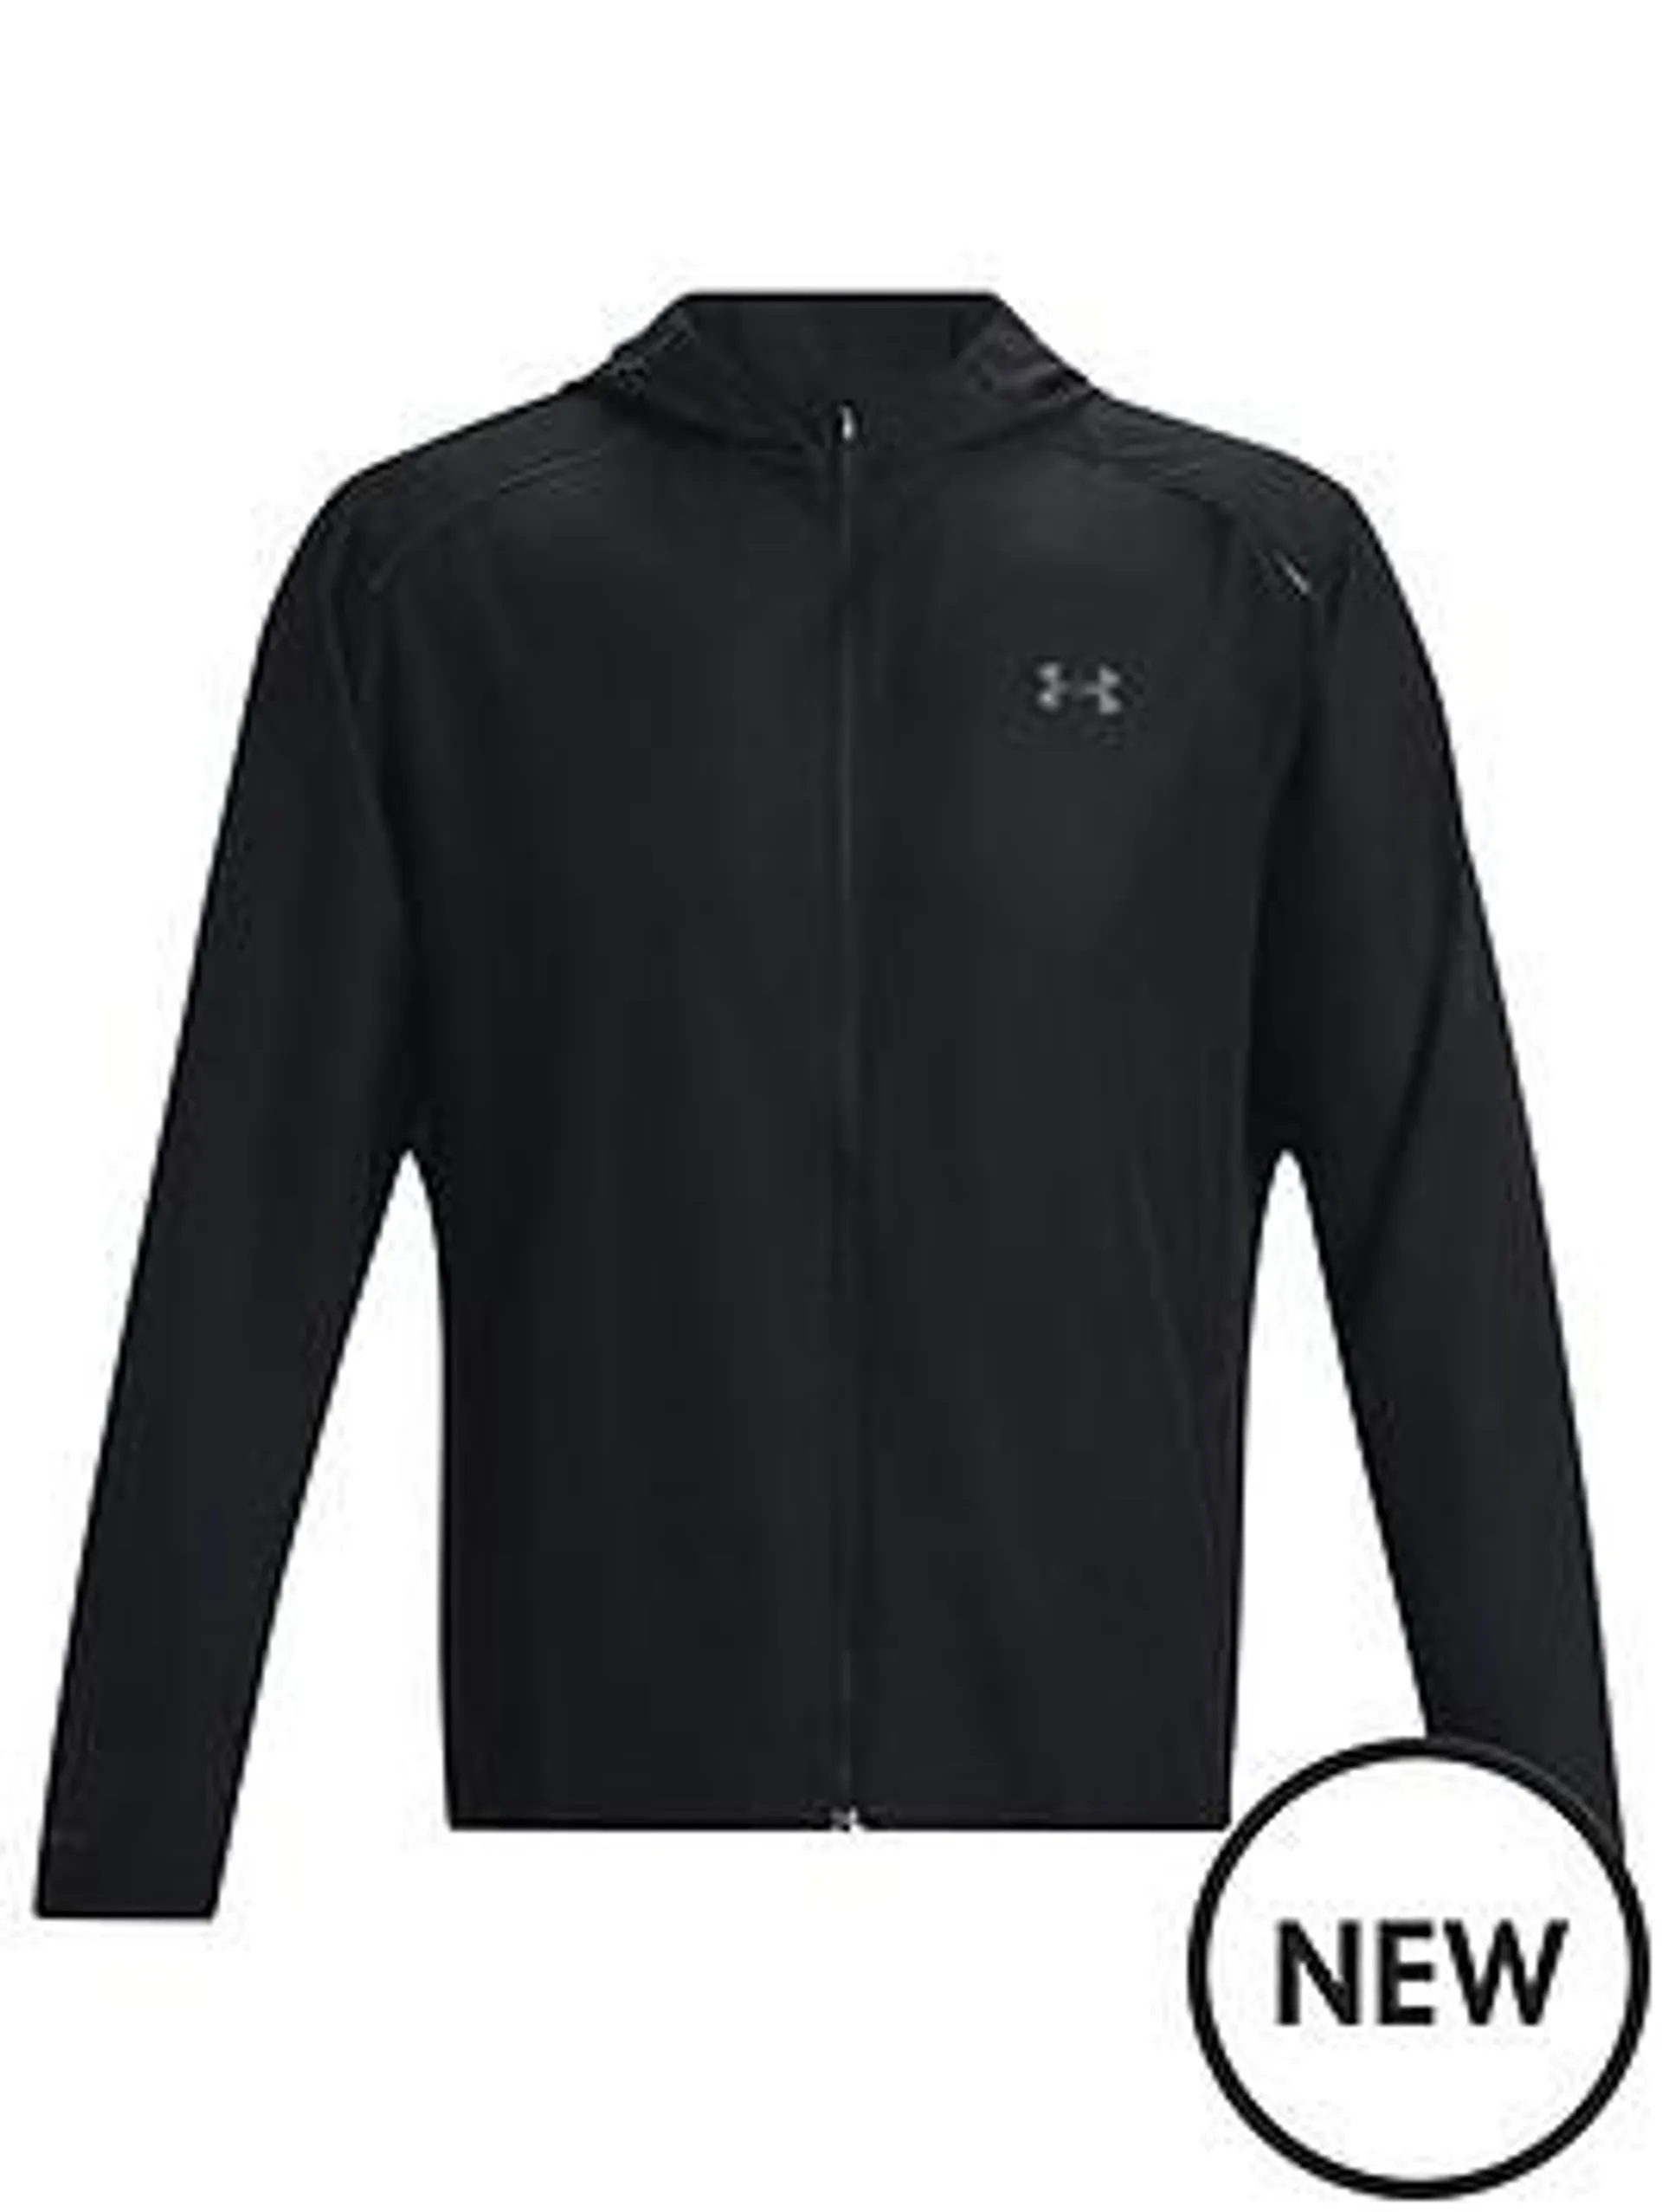 Men's Running Storm Hooded Jacket - Black/Grey